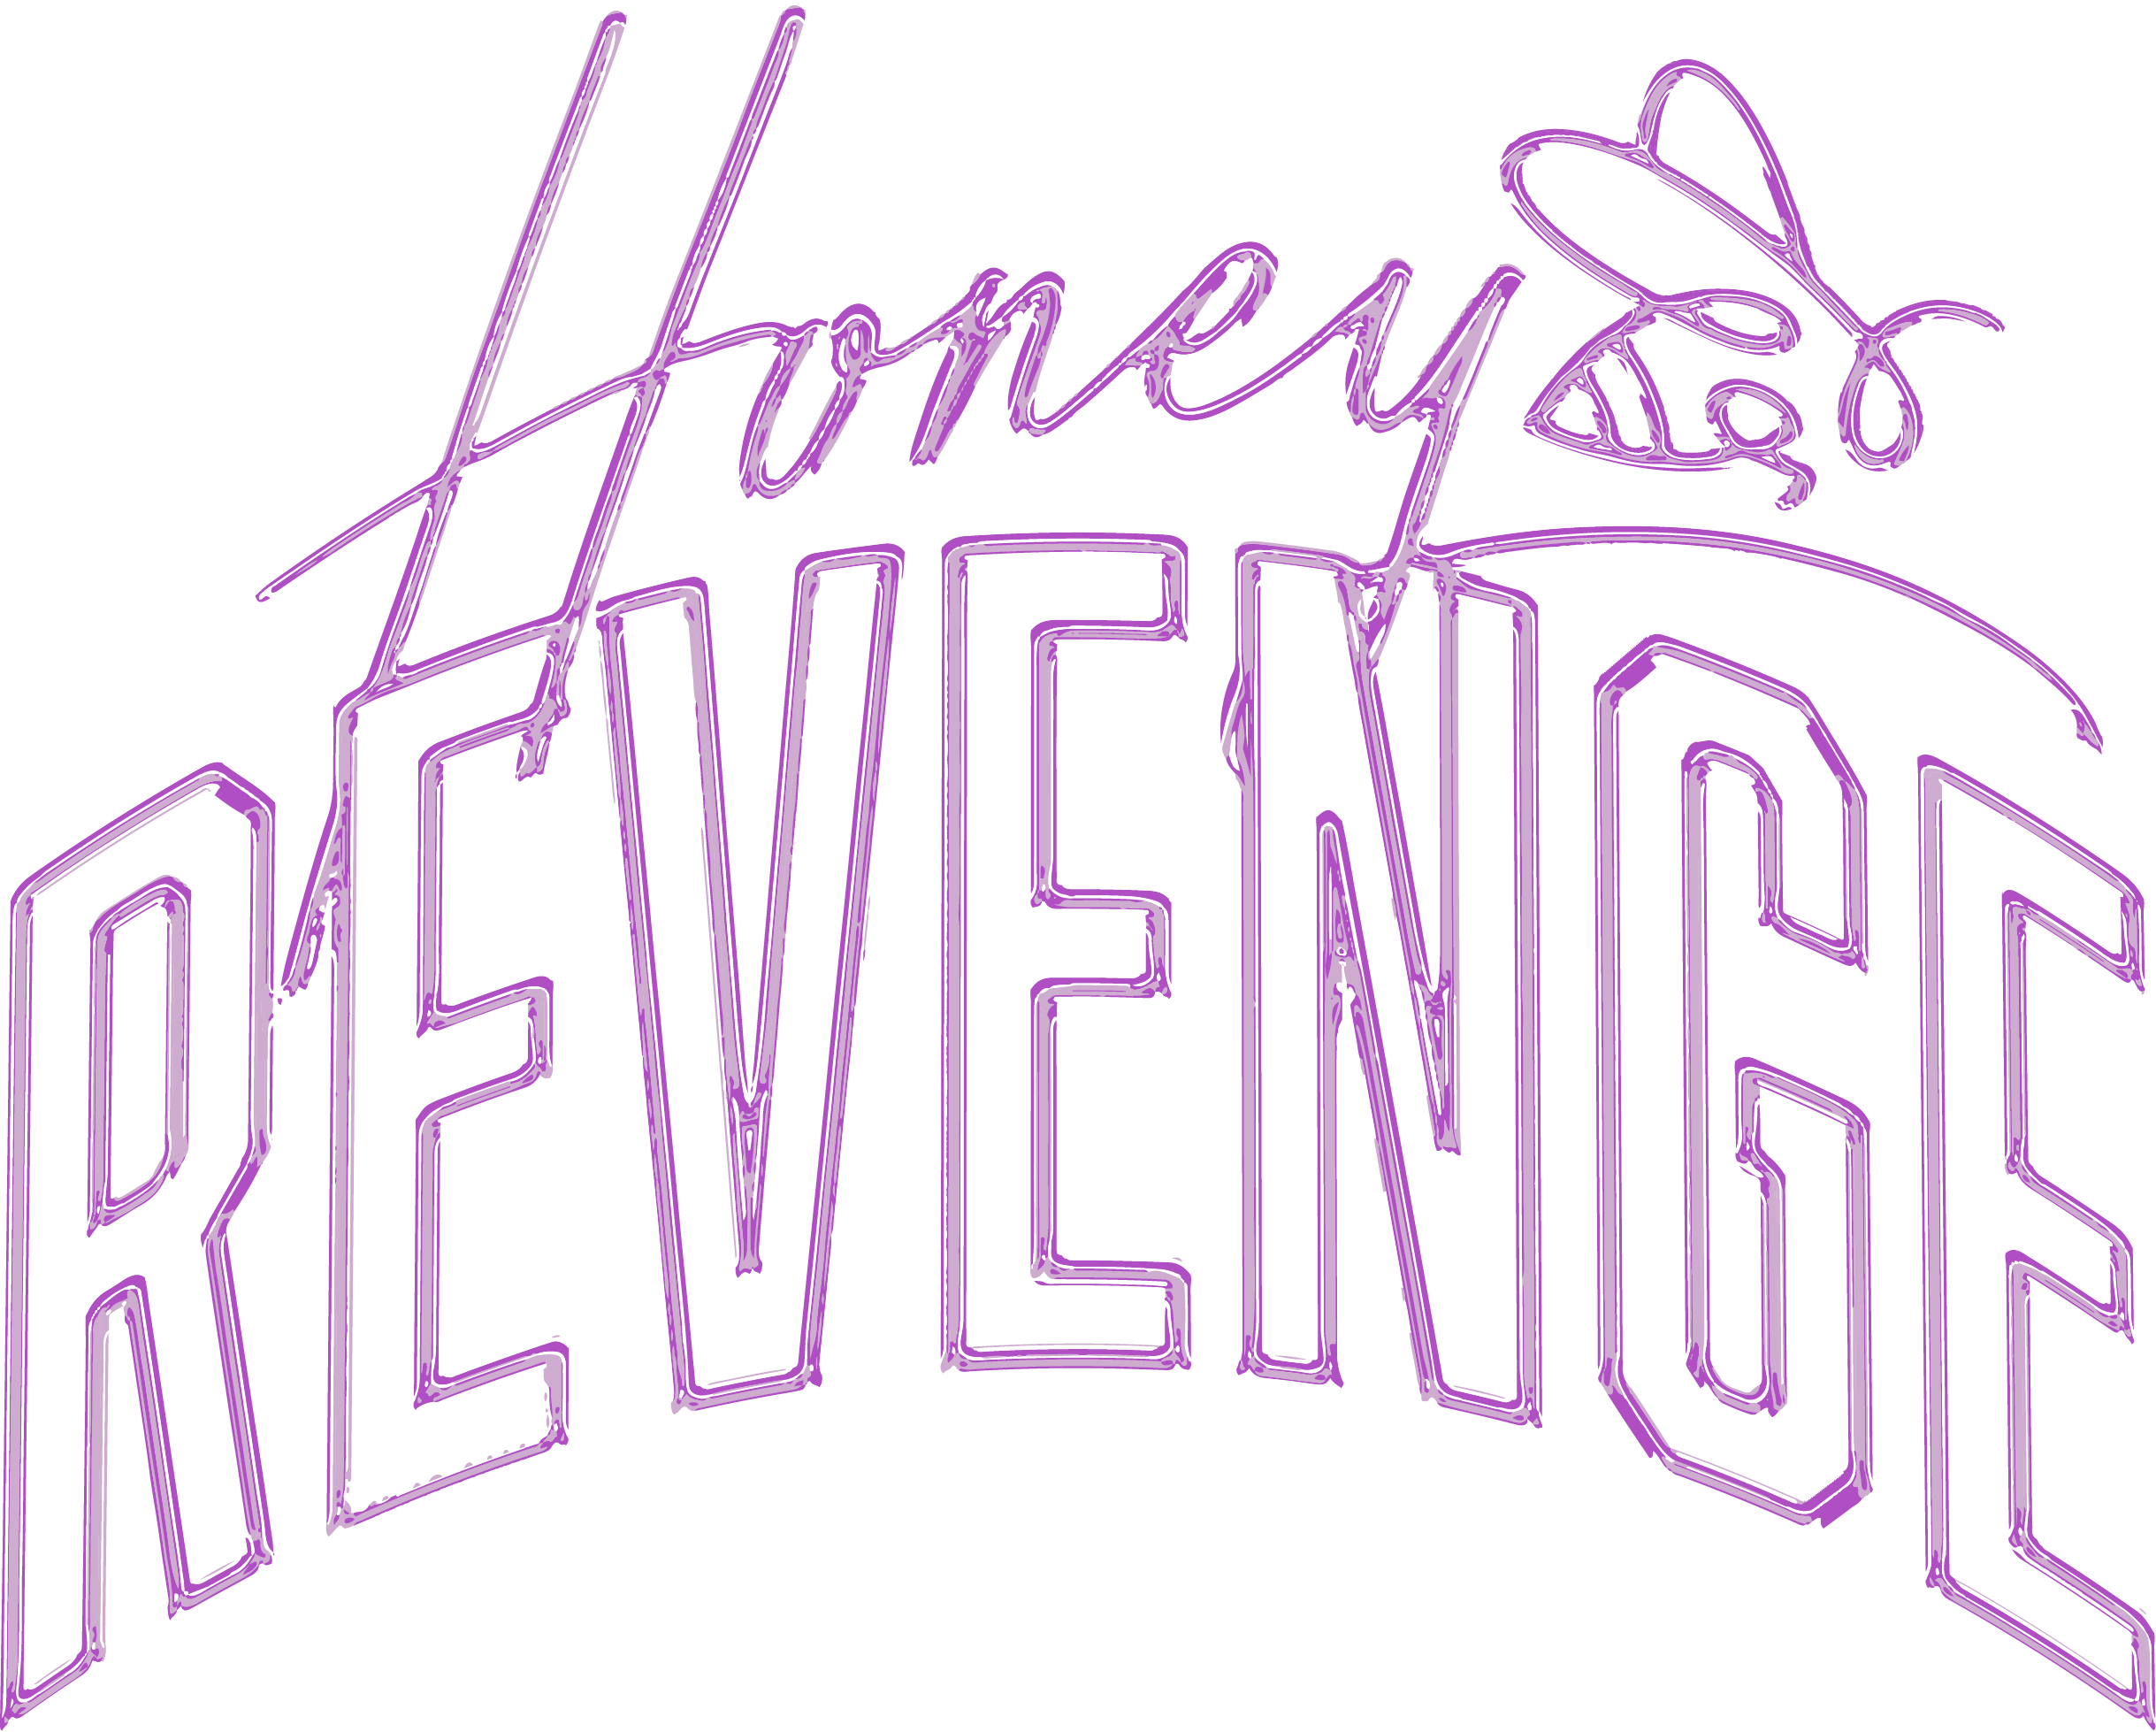 Band logo for doyle's revenge | Logo design contest | 99designs